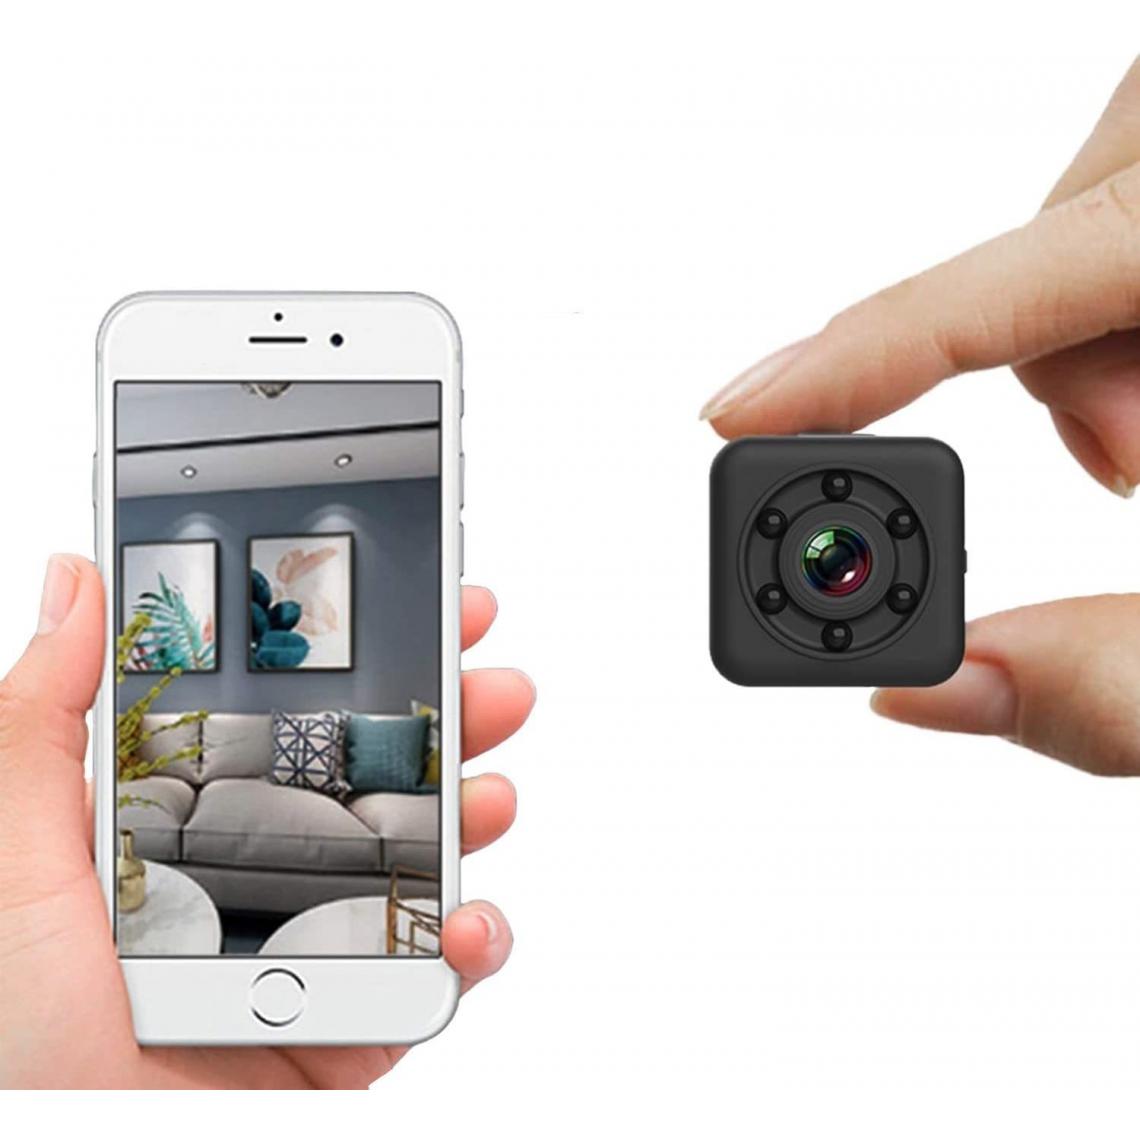 Chrono - Mini caméra Wifi image vidéo caméra cachée petit portable sans fil avec vision nocturne, conception étanche 30m pour extérieur intérieur (utilisation connectée wifi) - Autres accessoires smartphone